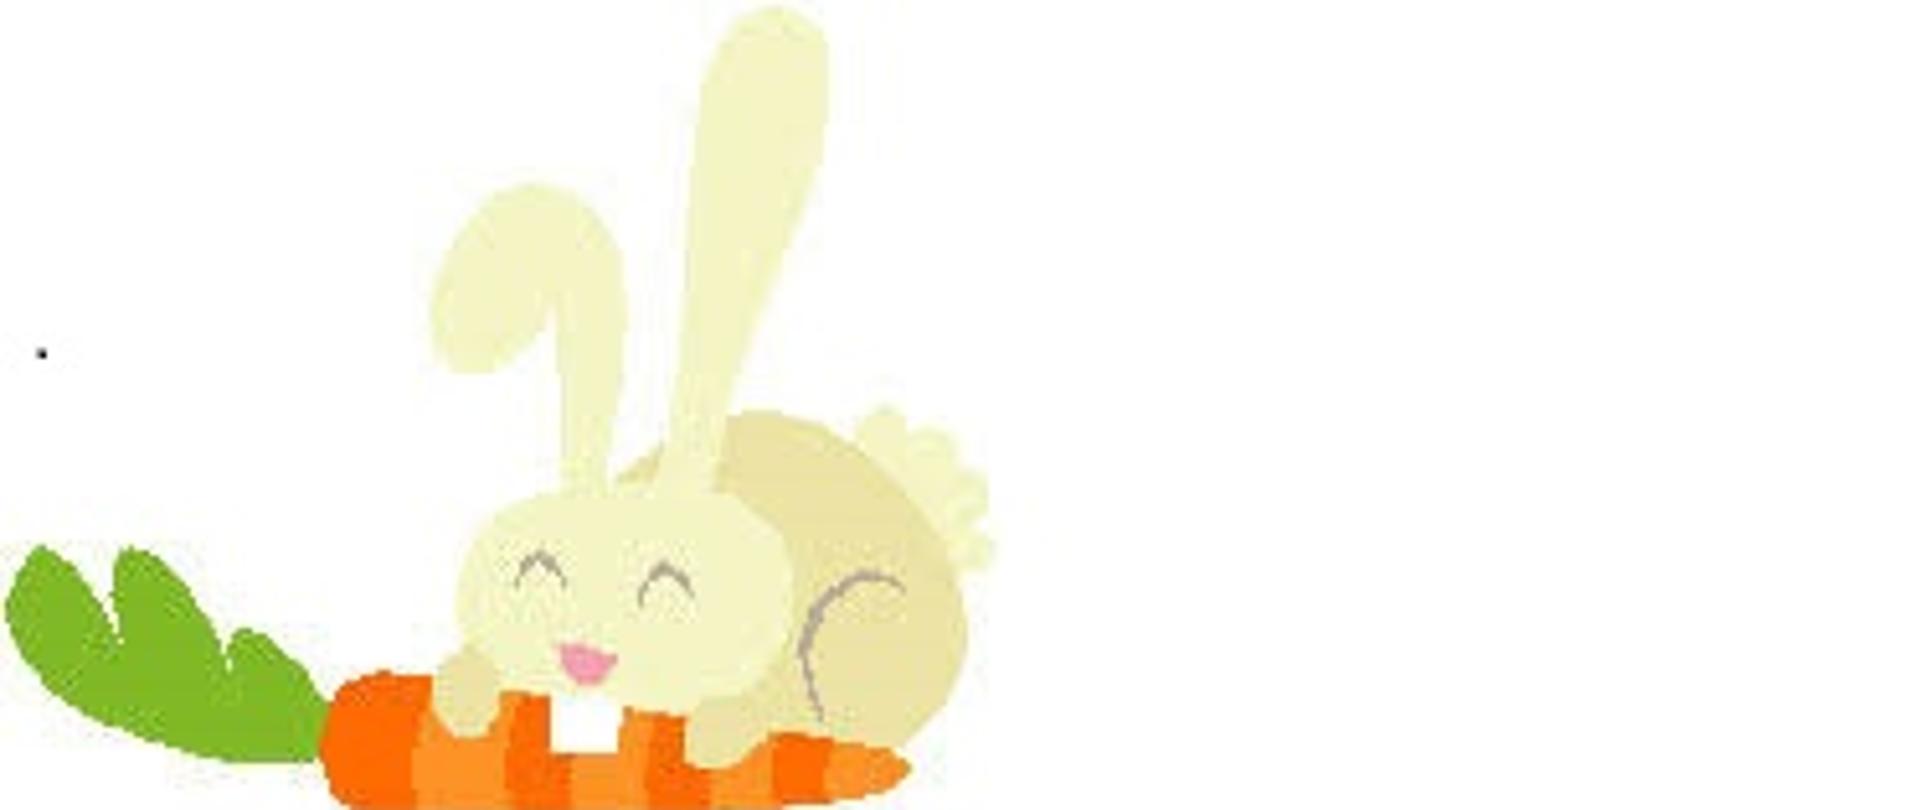 Na rysunku widoczny królik na białym tle zajadający pomarańczową marchewkę z zieloną natką.